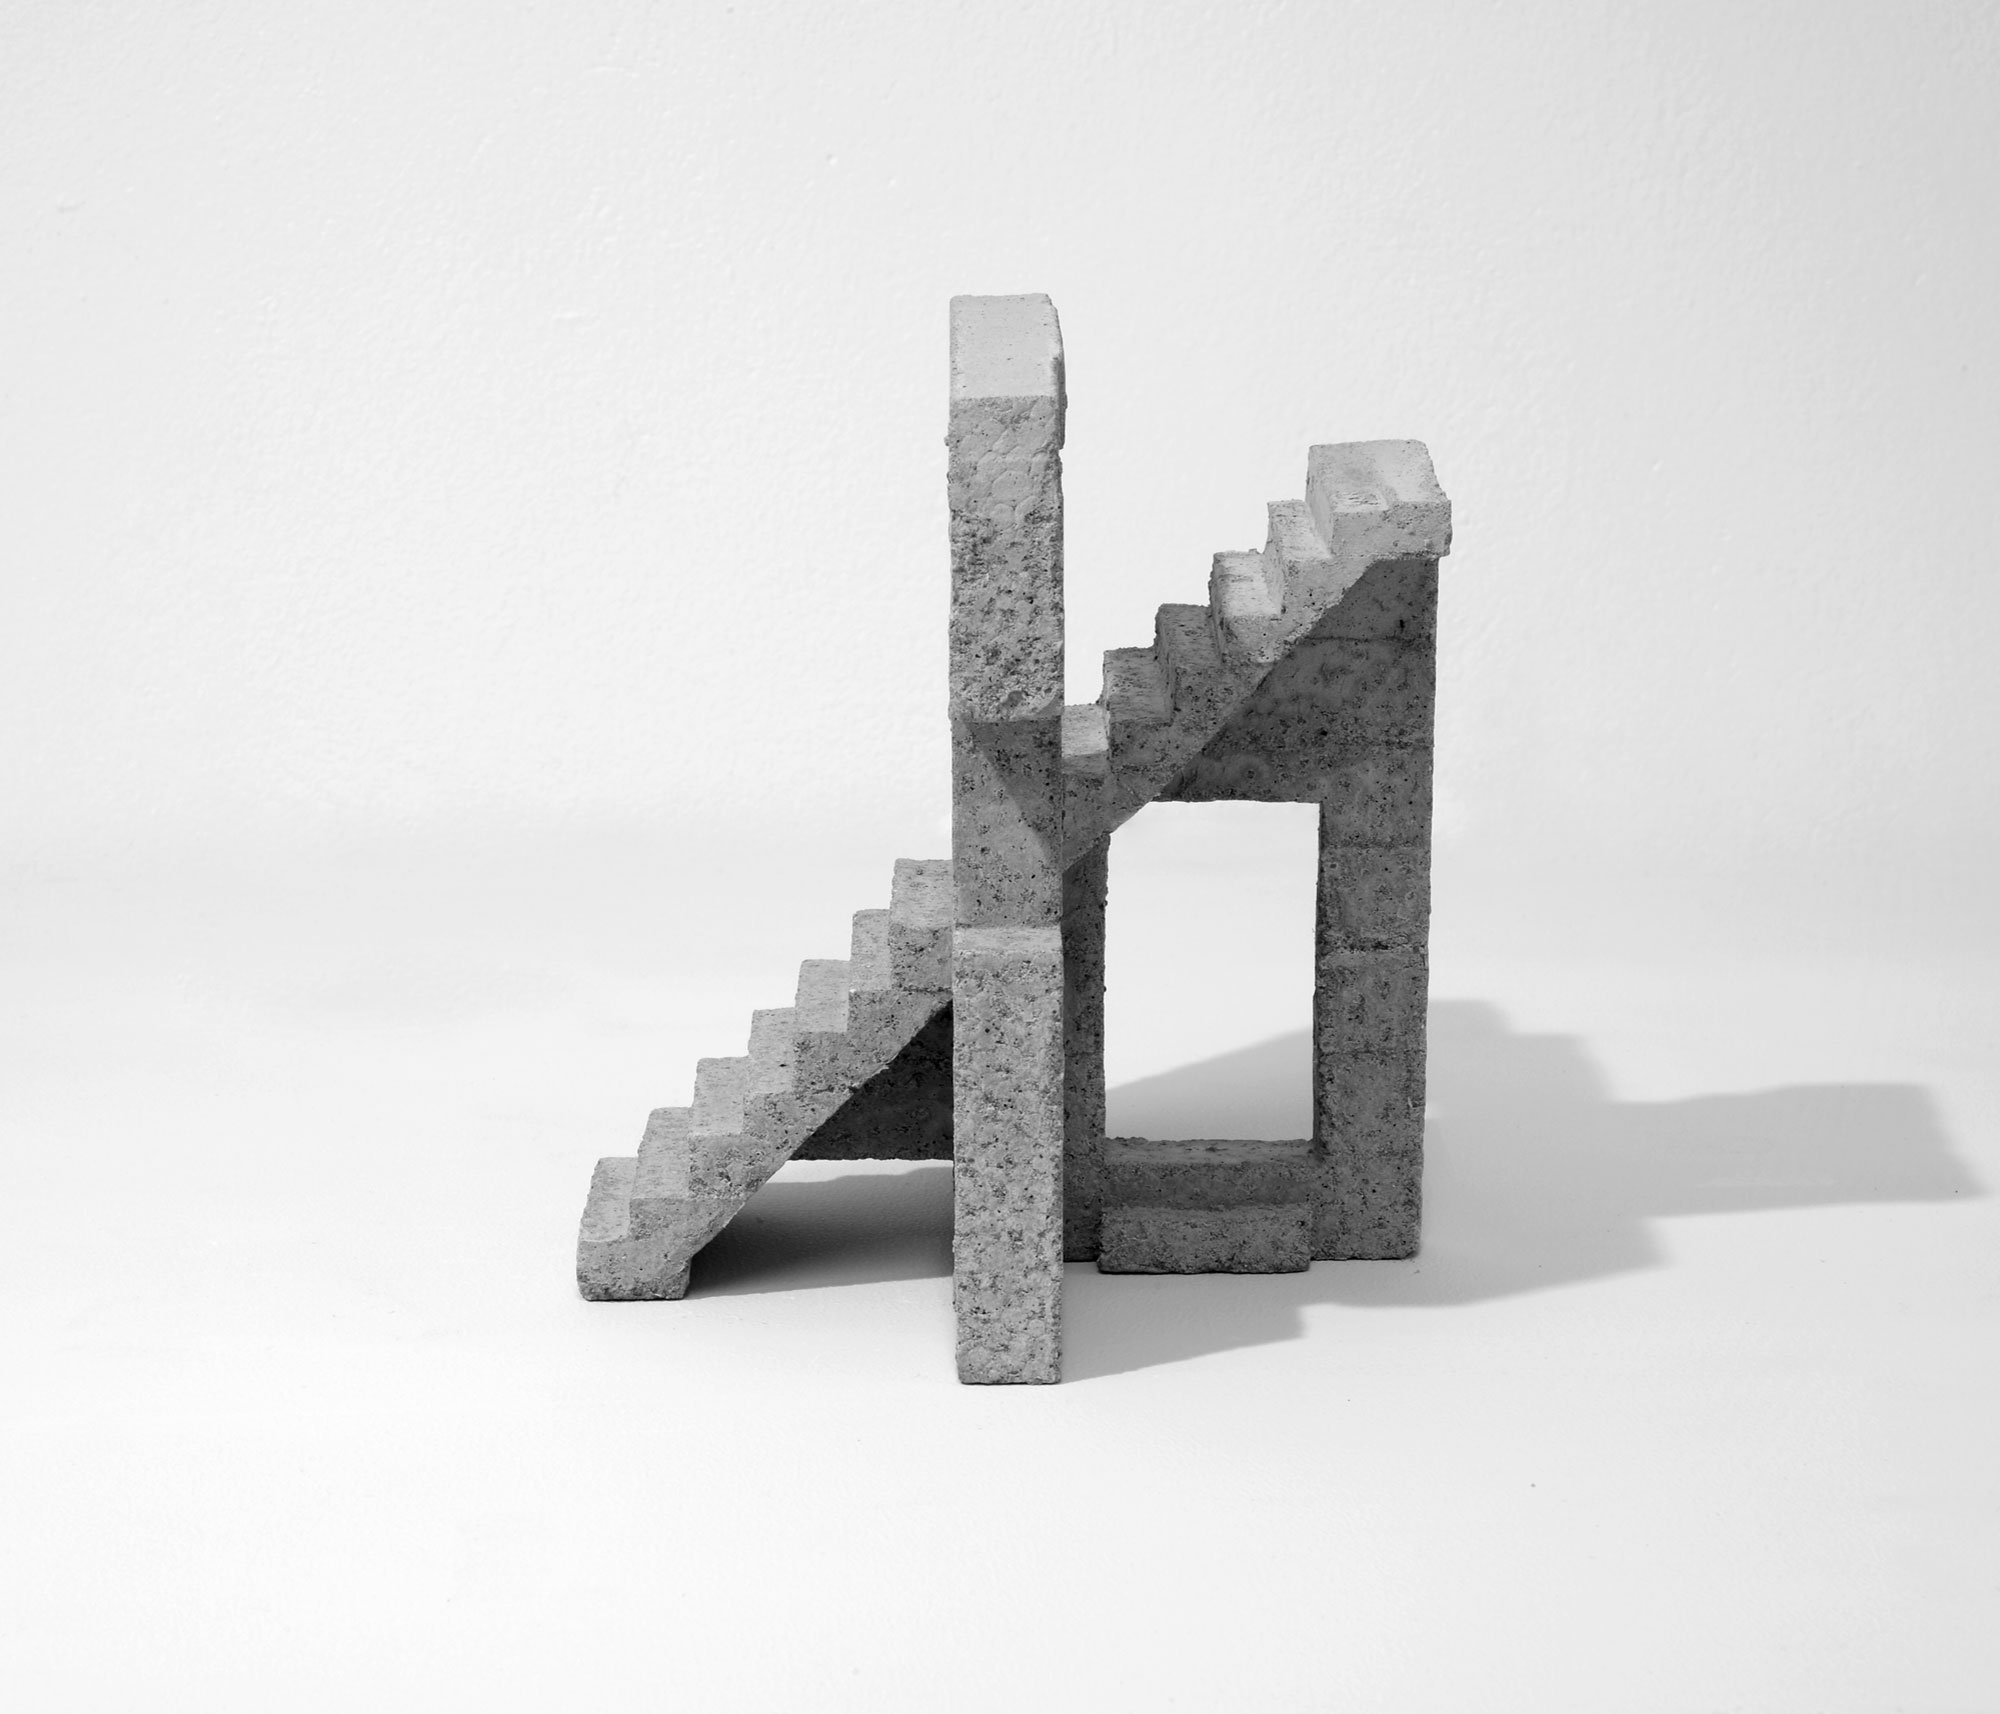 mattia listowski art design objet décoration sculpture béton moulage micro architecture maquette passage 9 édition limitée numérotée signée paris bruxelles 2021